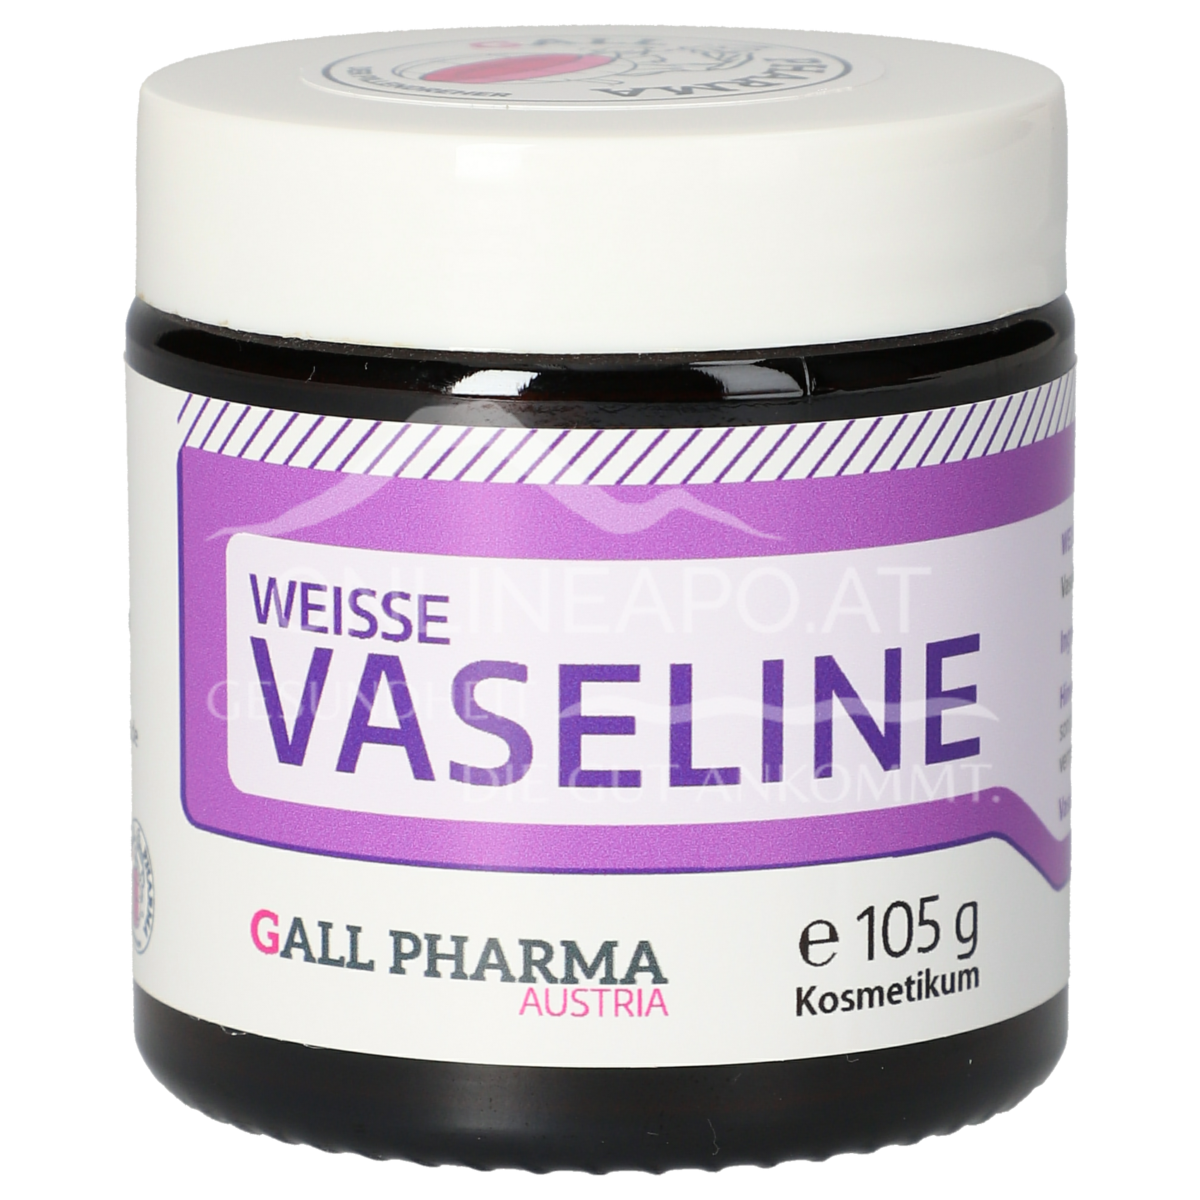 Gall Pharma Vaseline